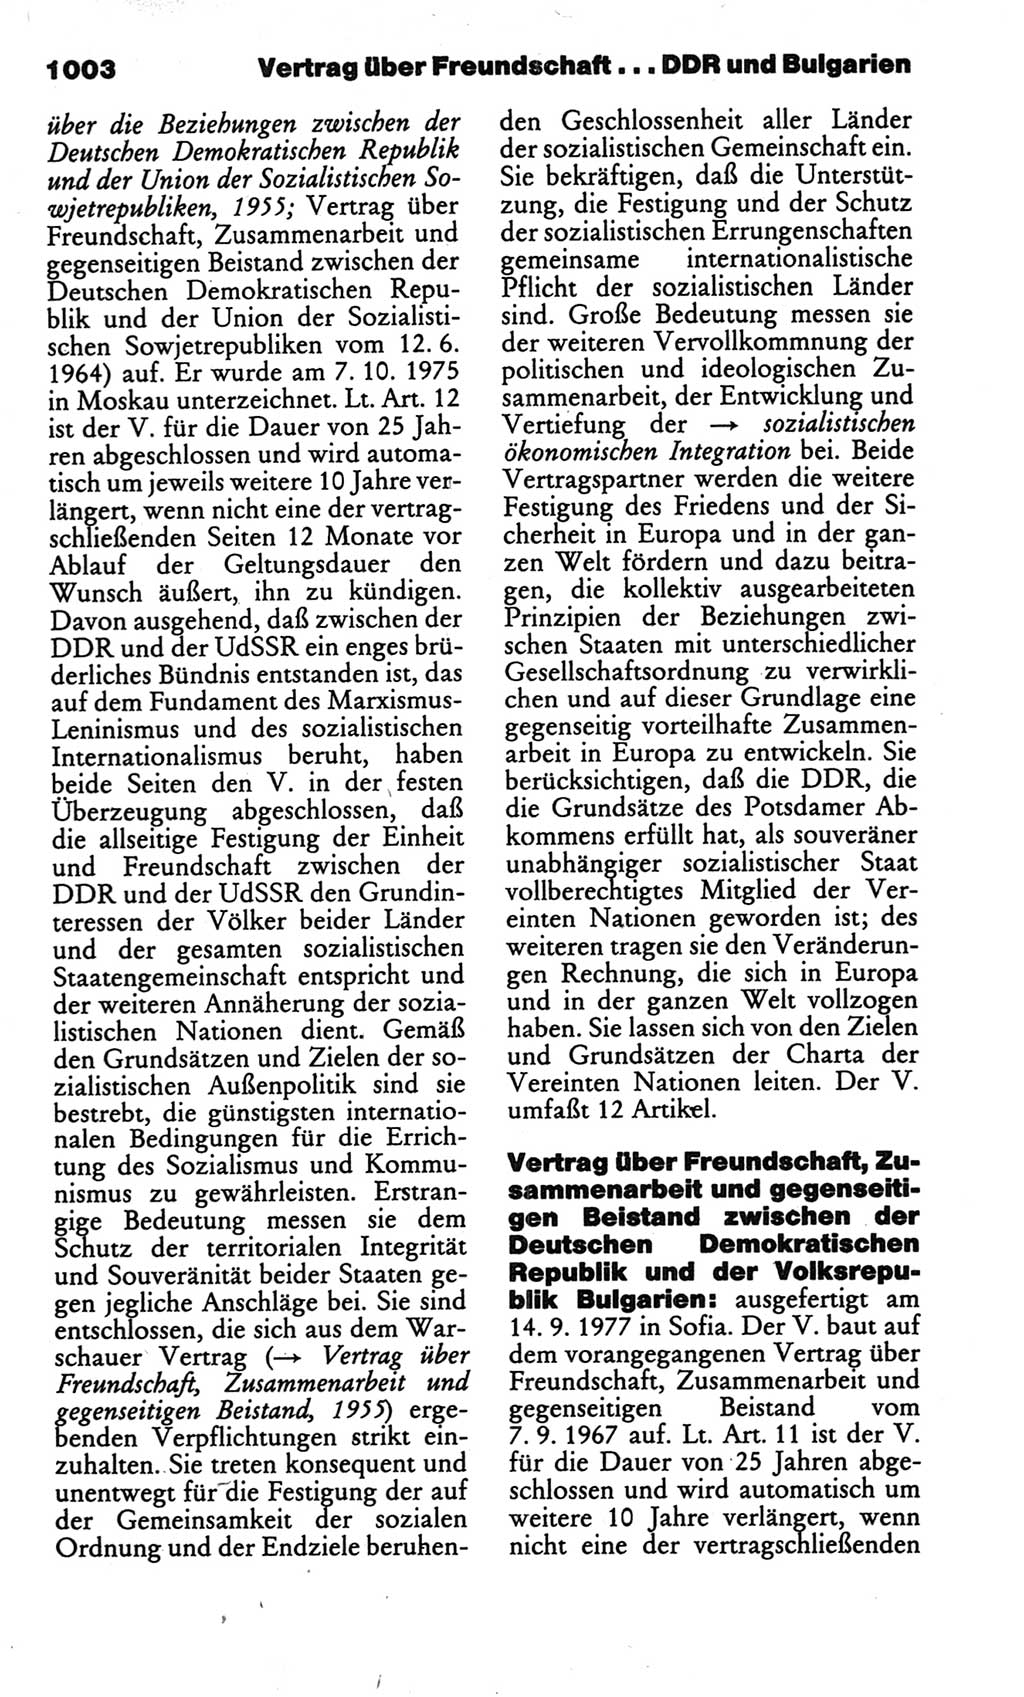 Kleines politisches Wörterbuch [Deutsche Demokratische Republik (DDR)] 1986, Seite 1003 (Kl. pol. Wb. DDR 1986, S. 1003)